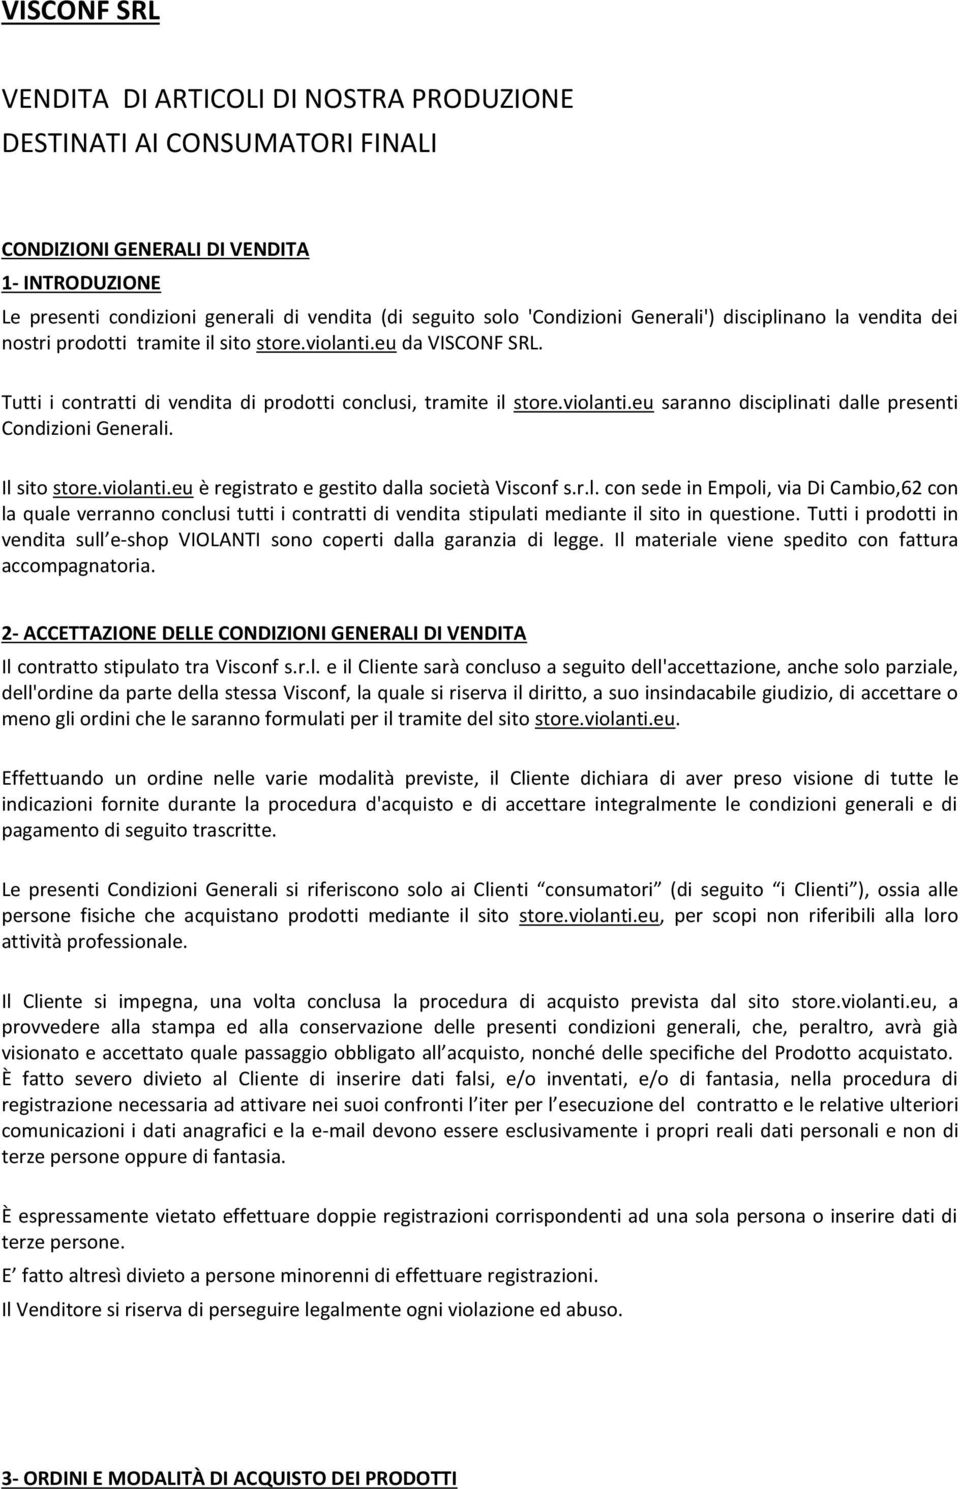 Il sito store.violanti.eu è registrato e gestito dalla società Visconf s.r.l. con sede in Empoli, via Di Cambio,62 con la quale verranno conclusi tutti i contratti di vendita stipulati mediante il sito in questione.